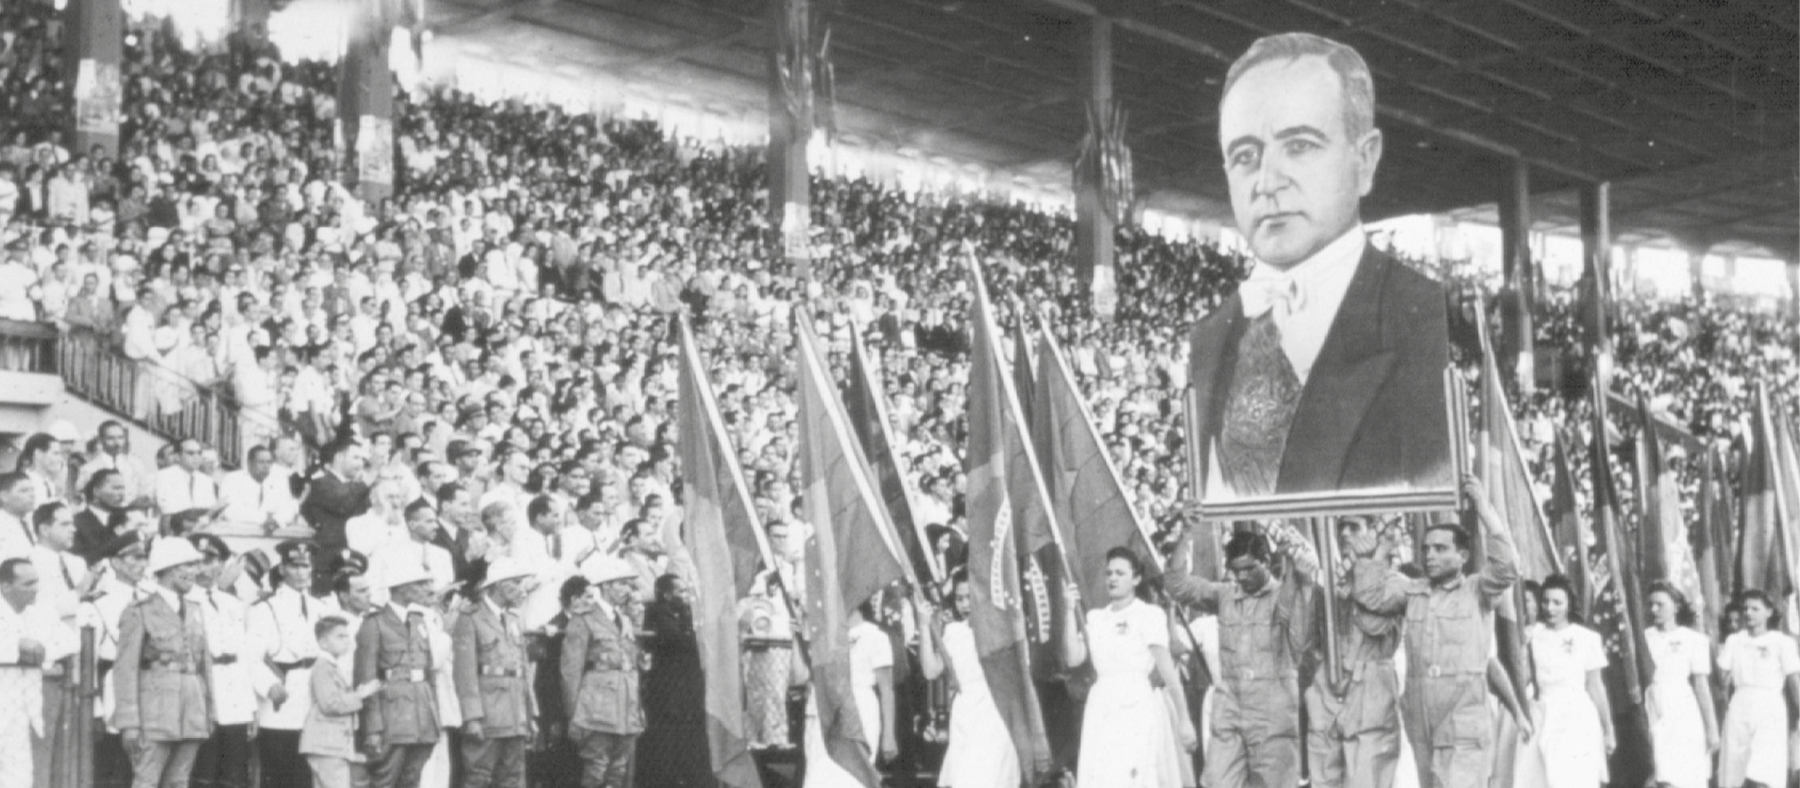 Fotografia em preto e branco. Multidão nas arquibancadas de um estádio. No centro dele, um grupo desfila com bandeiras e a imagem de Getúlio Vargas.